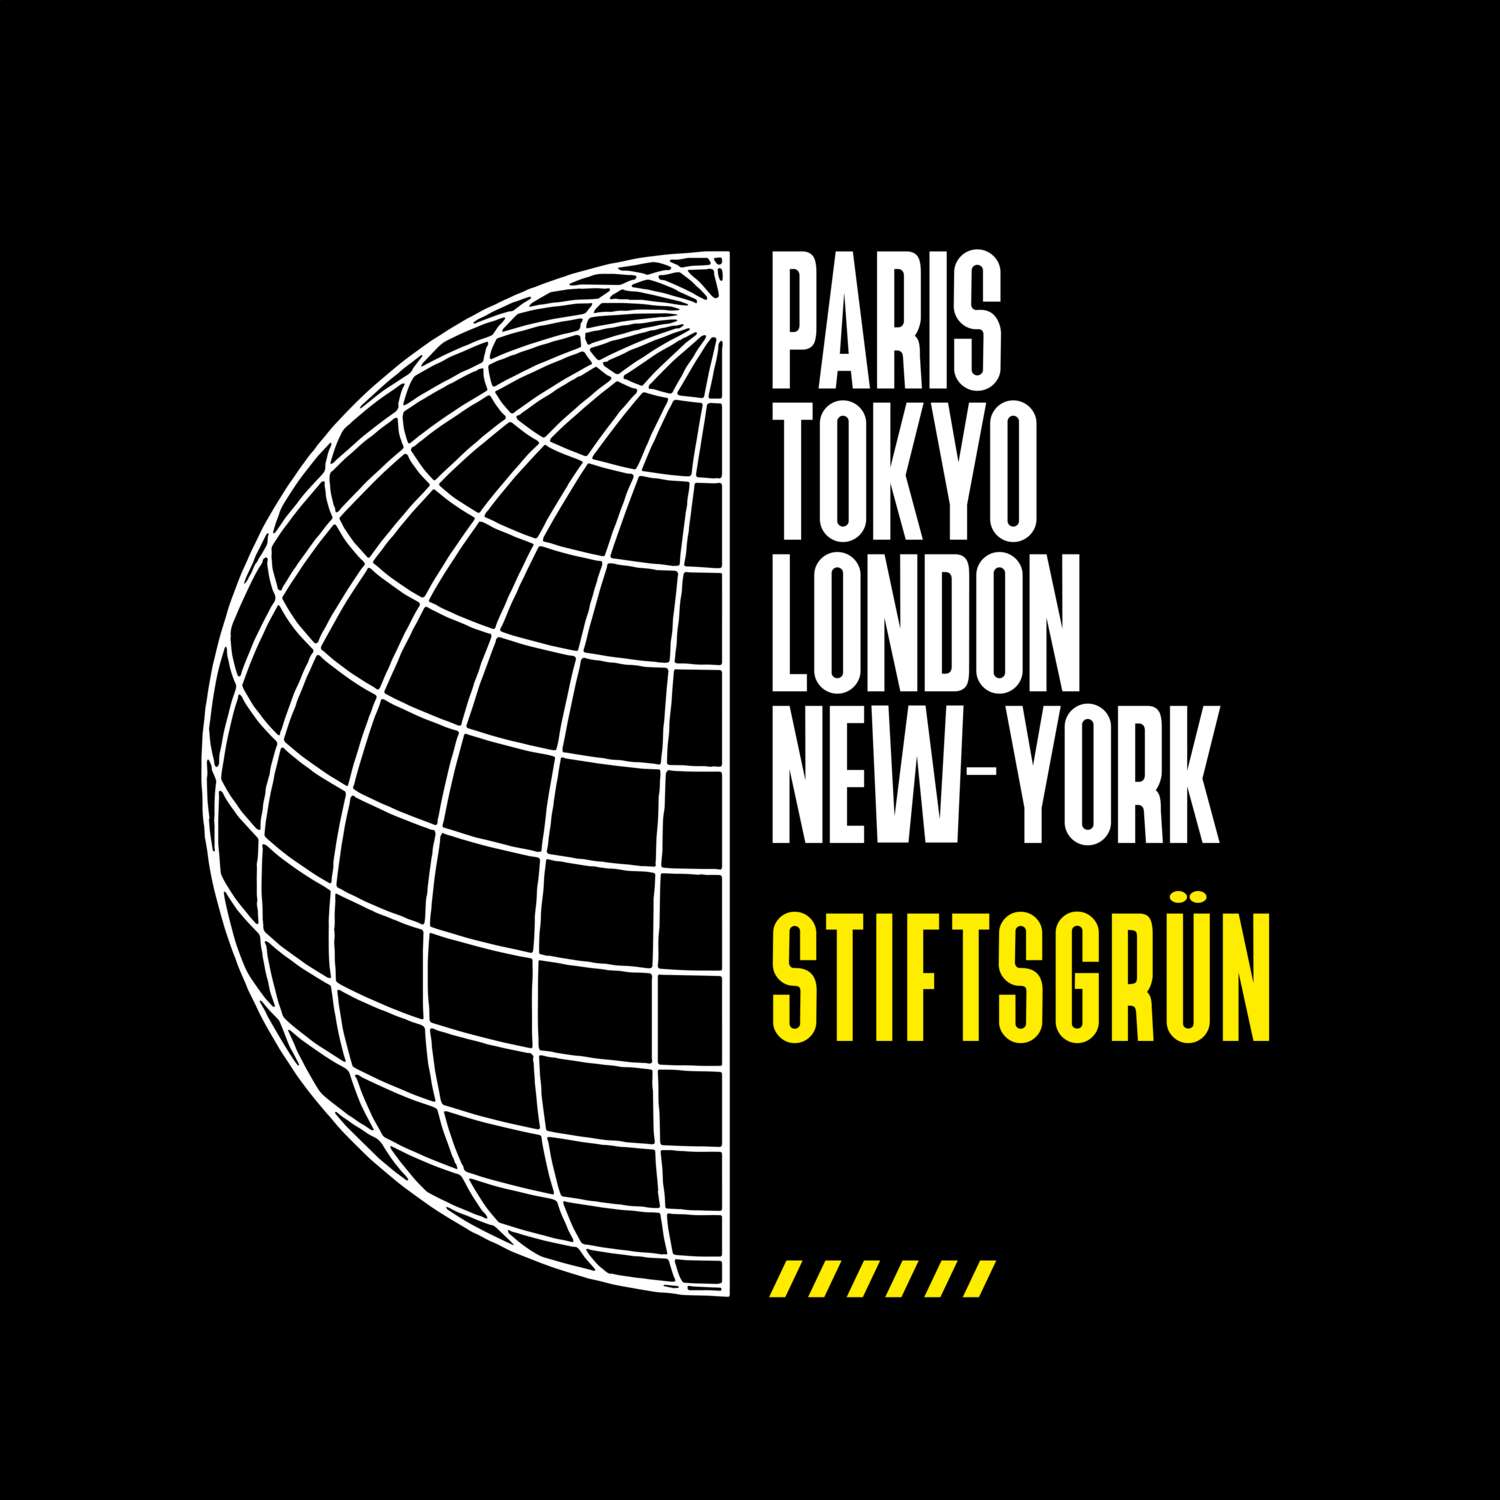 Stiftsgrün T-Shirt »Paris Tokyo London«